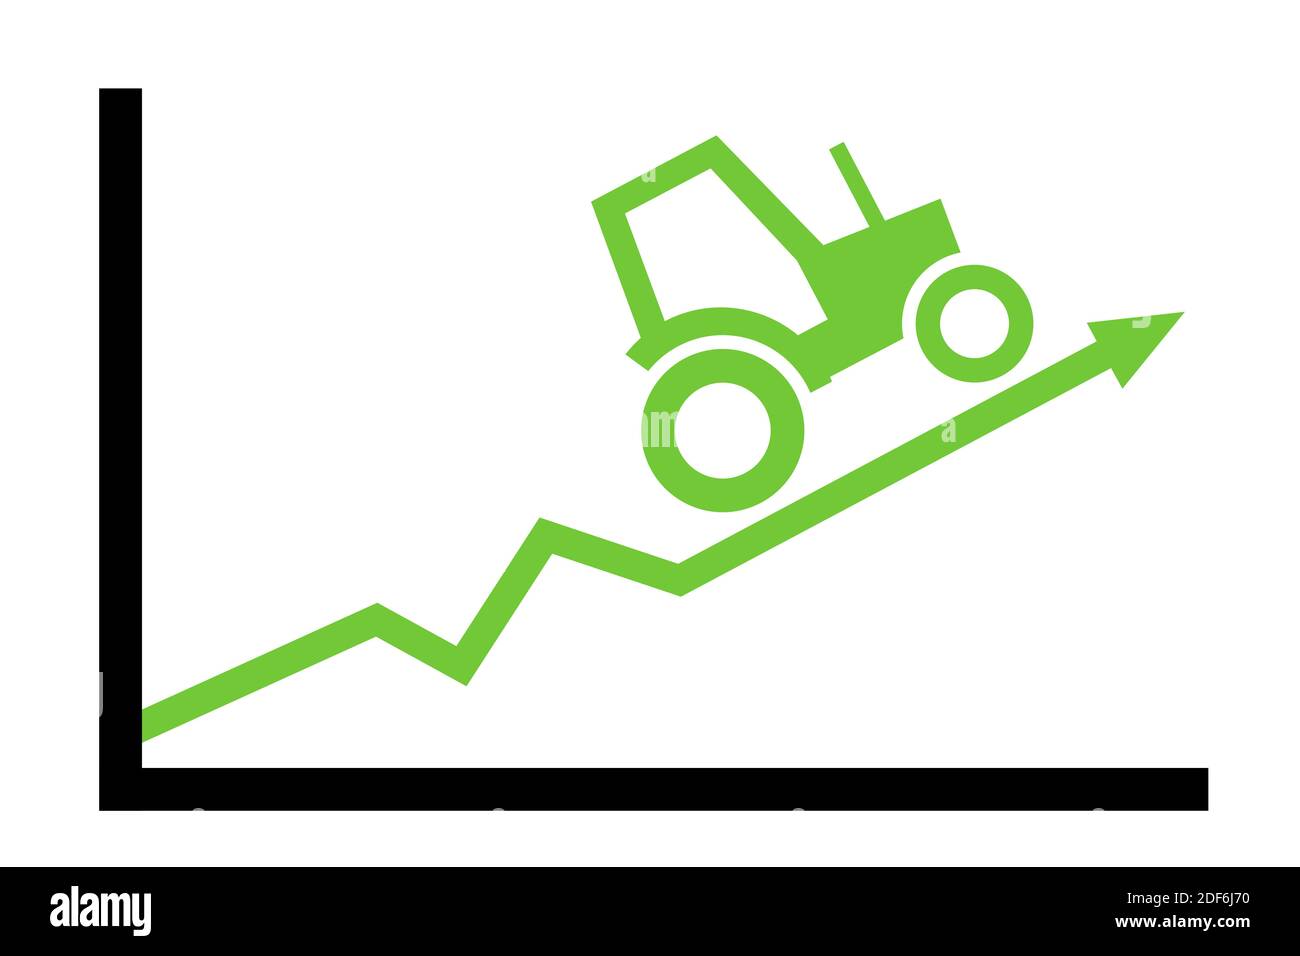 Trattore e grafico positivo - l'agricoltura / l'agricoltura come settore in crescita e redditizio. Miglioramento e aumento del profitto. Illustrazione vettoriale Foto Stock